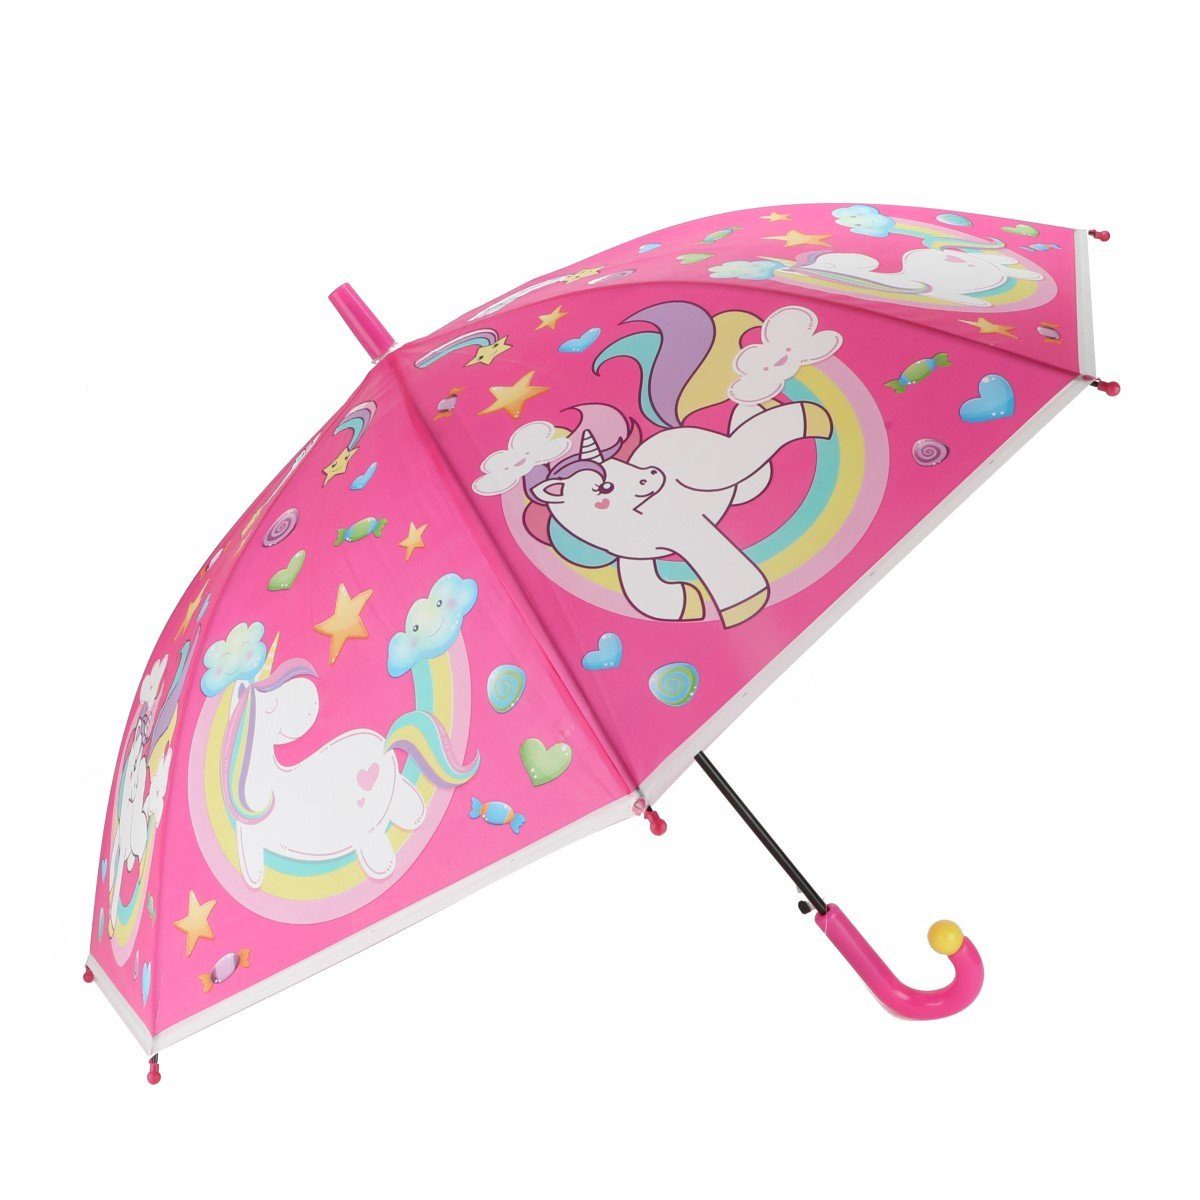 Einhorn Toi-Toys Dream Stockregenschirm Regenschirm Kinder Pferd